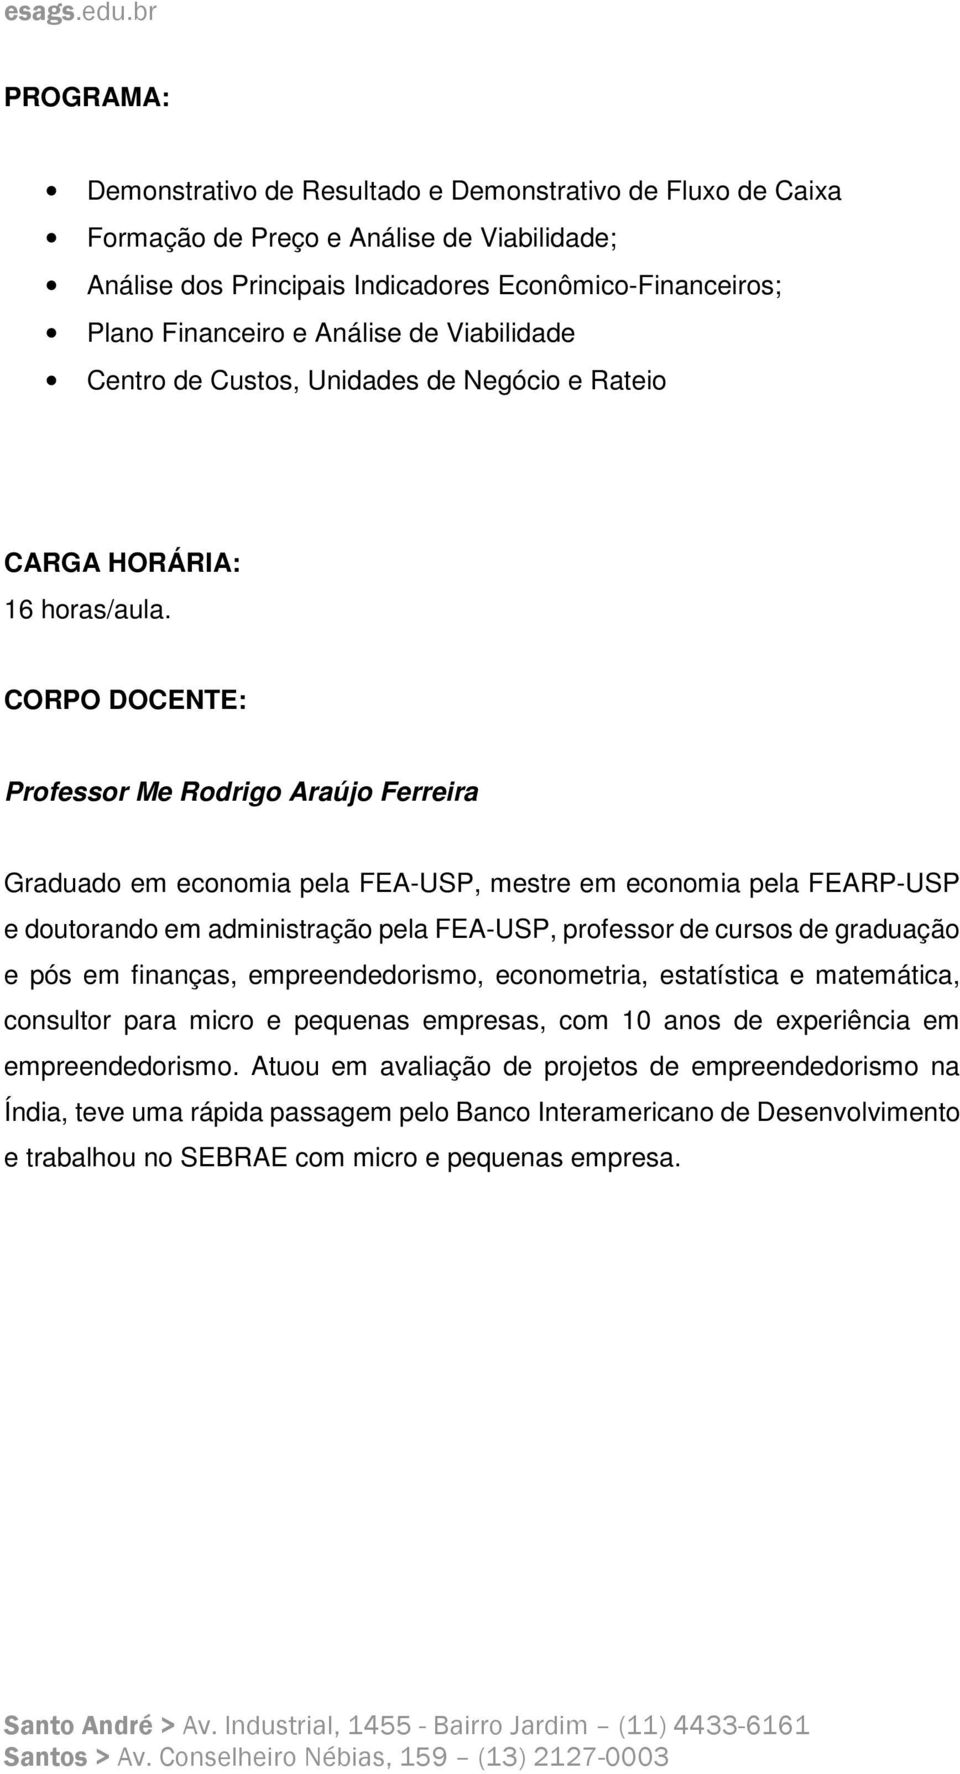 CORPO DOCENTE: Professor Me Rodrigo Araújo Ferreira Graduado em economia pela FEA-USP, mestre em economia pela FEARP-USP e doutorando em administração pela FEA-USP, professor de cursos de graduação e